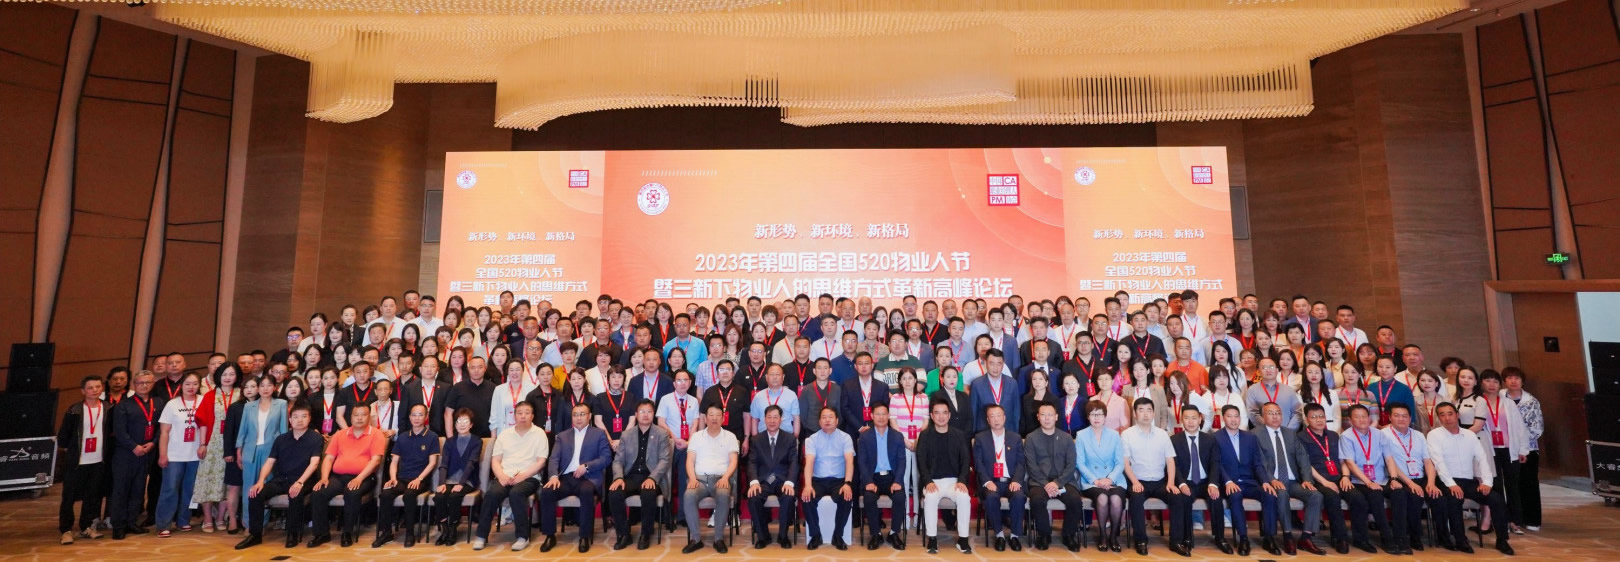 第四届全国520物业人节交流联谊会5月19日在天津成功举行